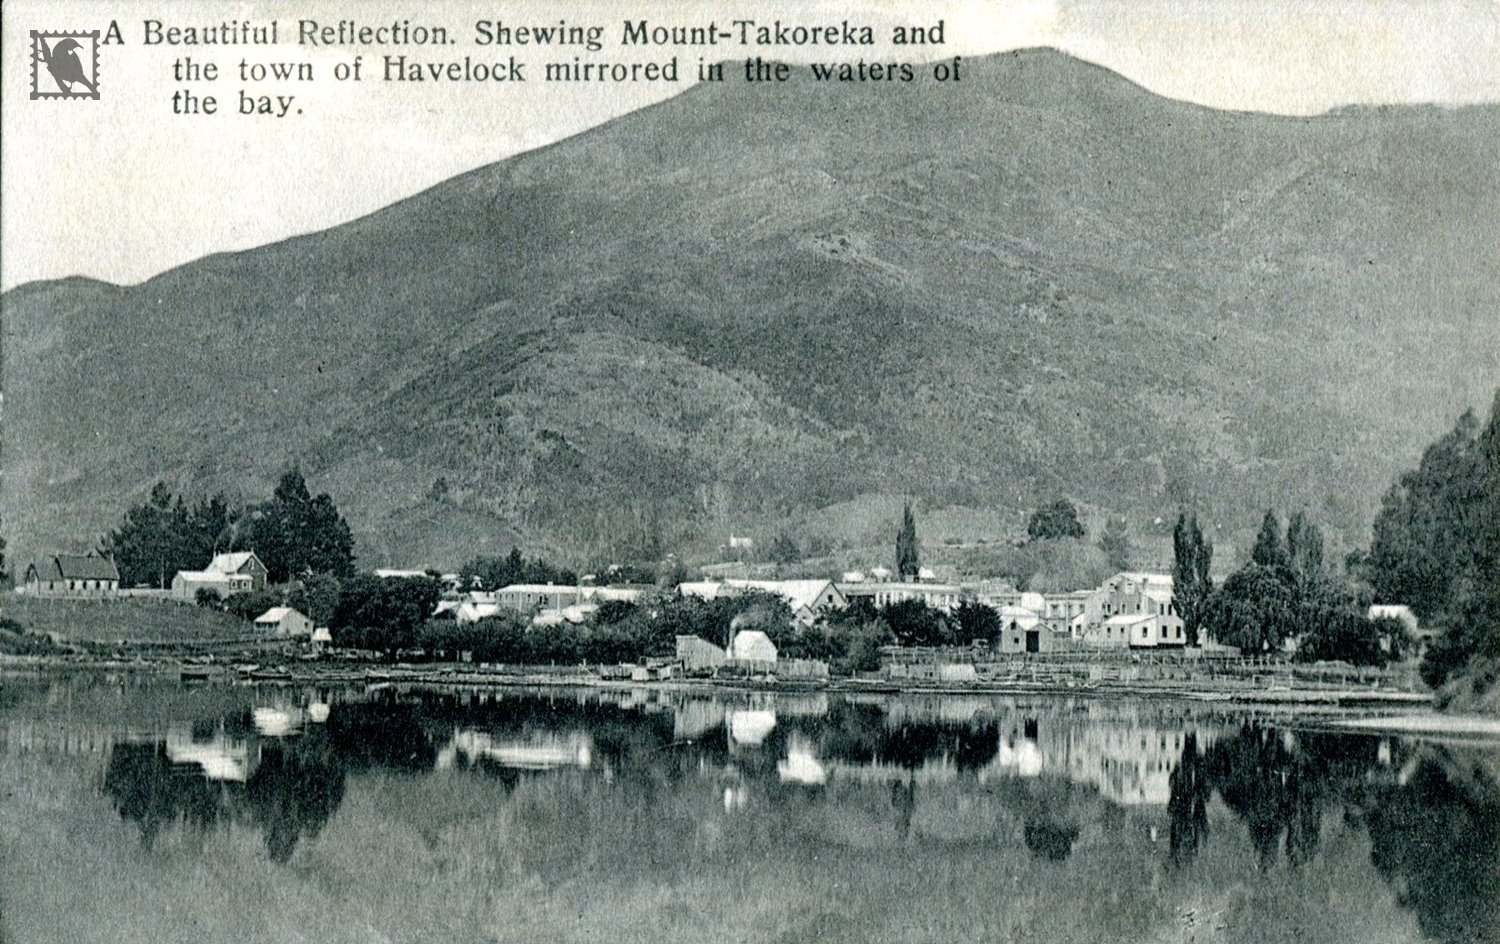 The Town of Havelock (Showing Mount Takoreke)